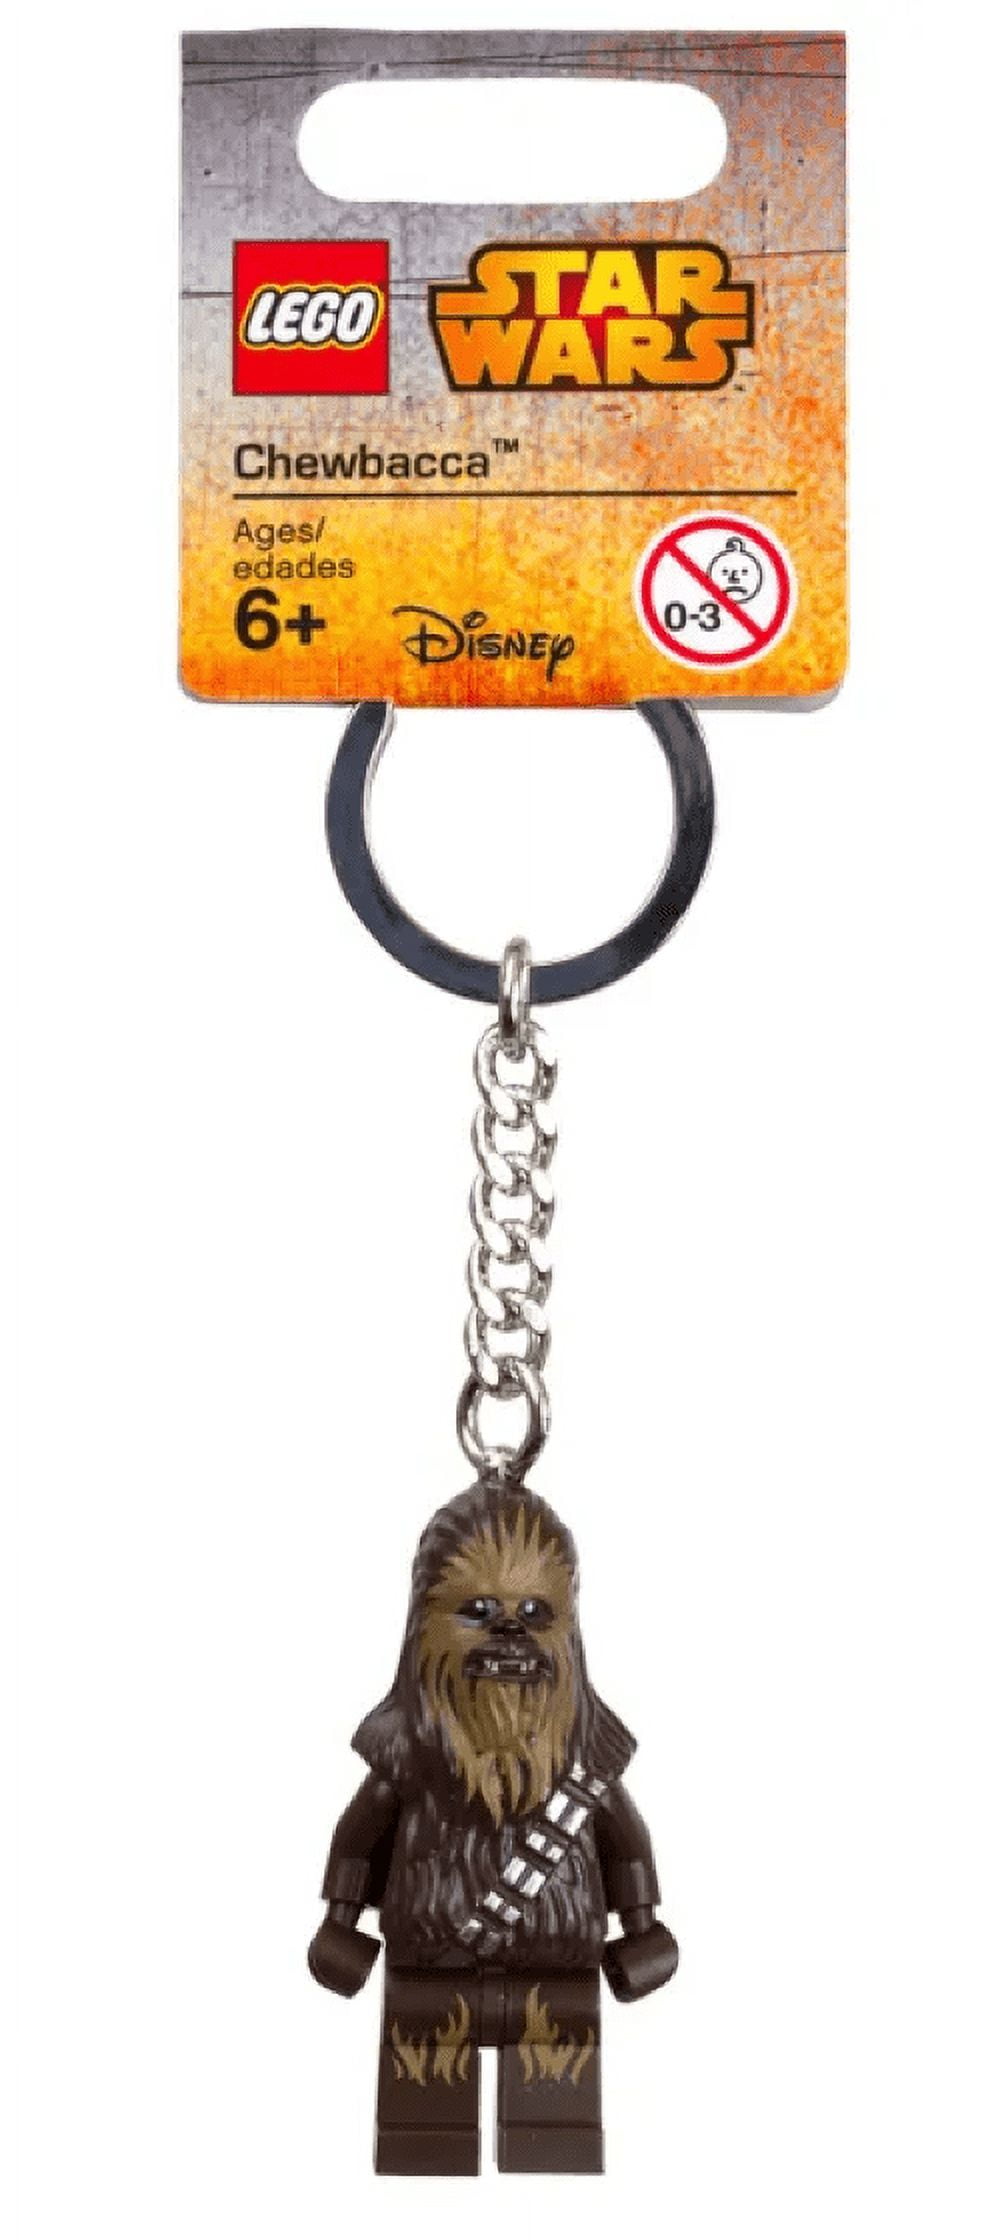 After8handmade - Star Wars chapstick holder keychains! 😊🙌🏻$6